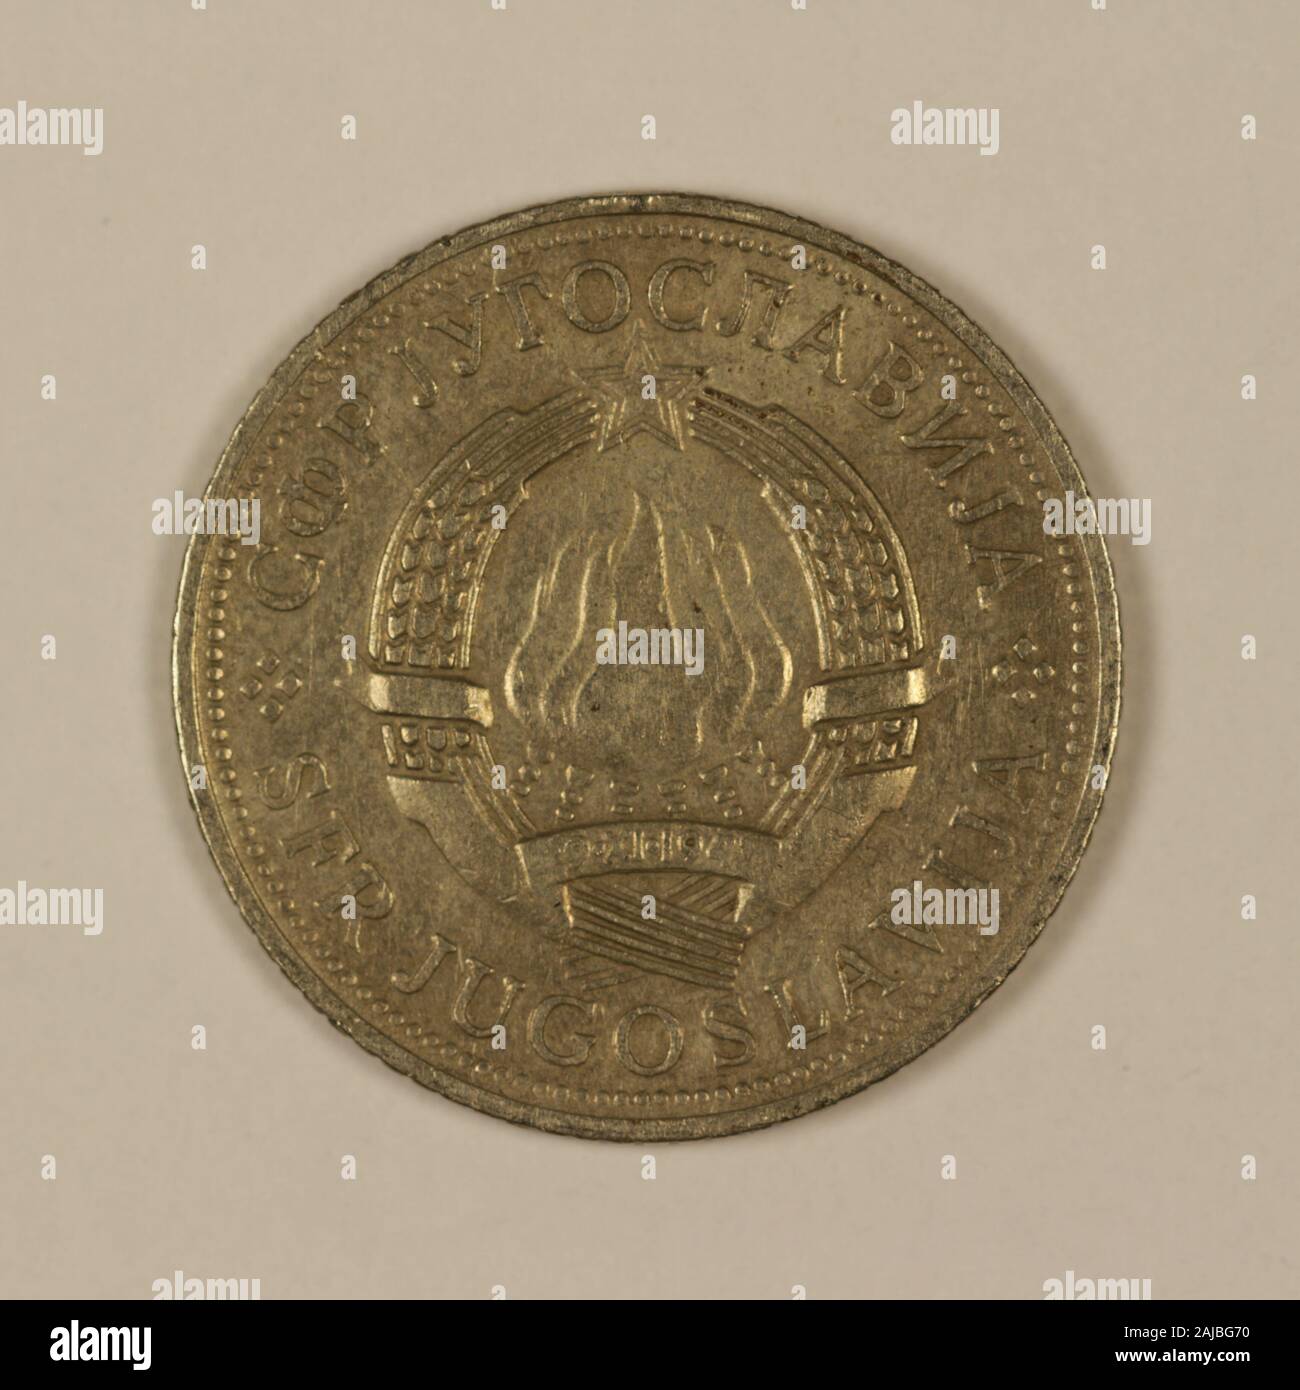 Rückseite einer ehemaligen Jugoslawischen 5 dinari Münze Foto Stock